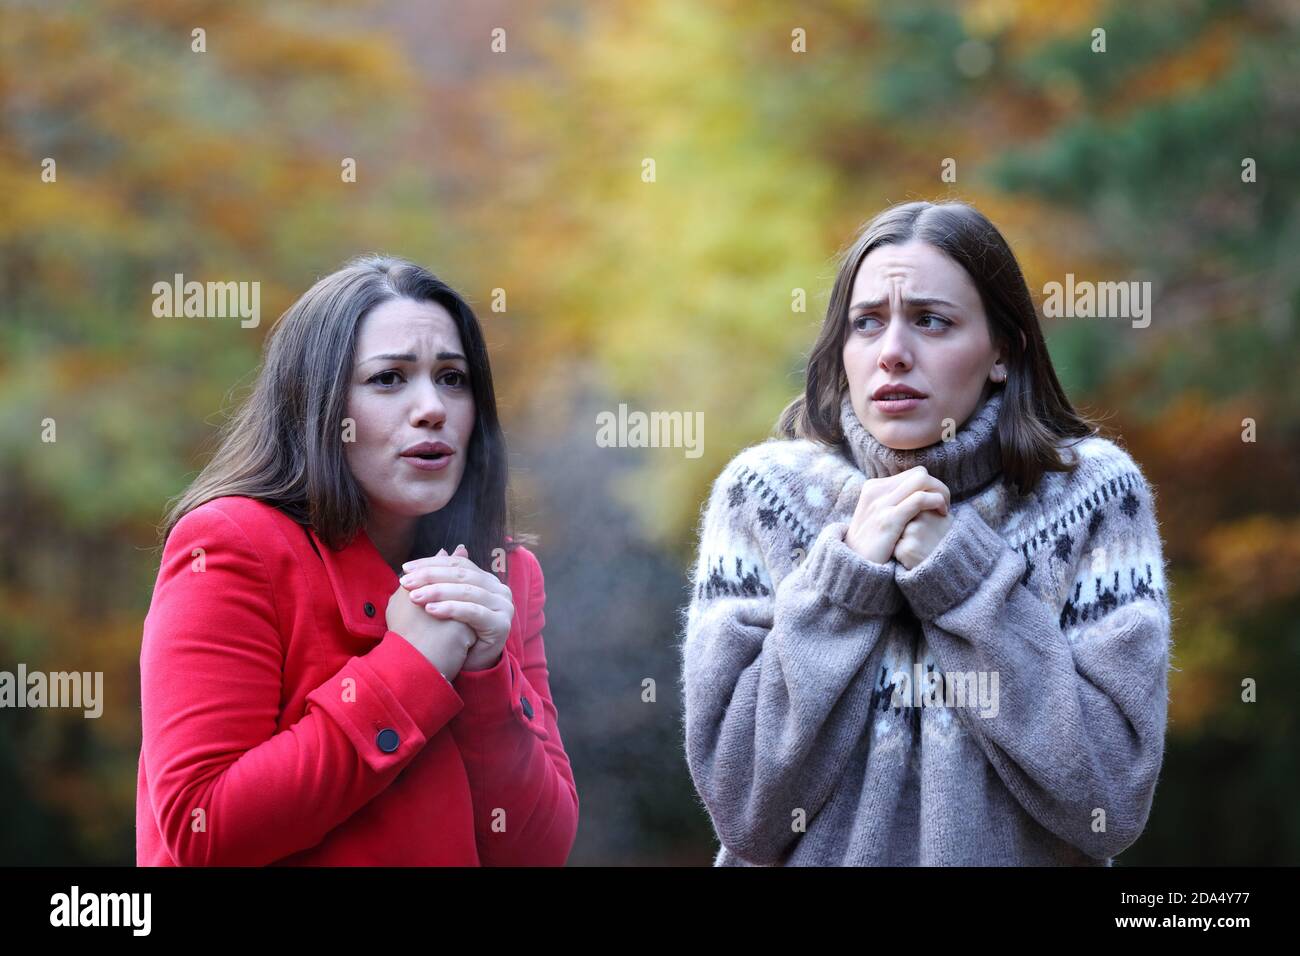 Zwei Frauen beschwerten sich, dass es kalt wurde, als sie in einem Park gingen Herbst Stockfoto